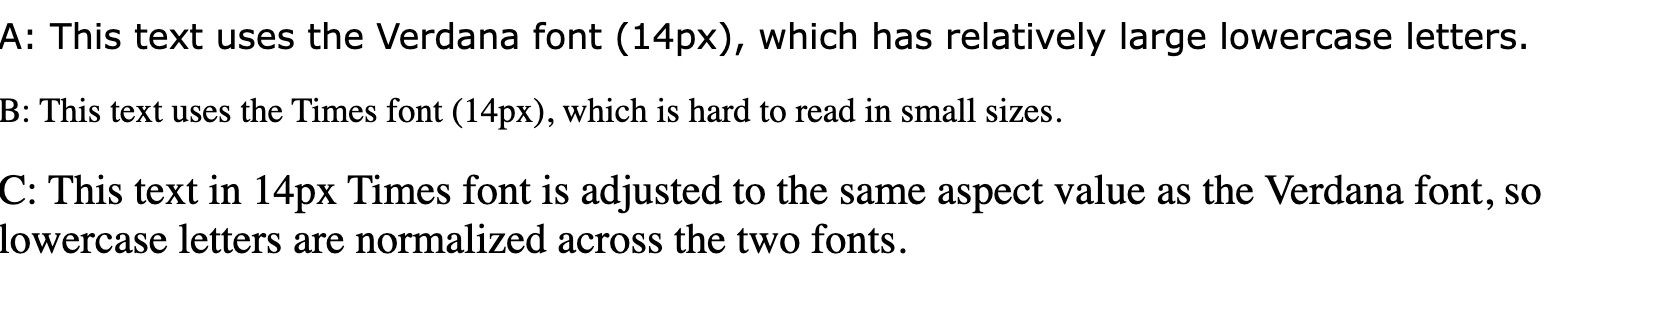 Dòng văn bản có nội dung &quot;Văn bản này sử dụng phông chữ verdana (14px), có chữ thường tương đối lớn&quot;, &quot;Văn bản này sử dụng phông chữ Times (14px) khó đọc ở kích thước nhỏ&quot; và &quot;Văn bản này bằng phông chữ 14px Times được điều chỉnh theo cùng giá trị khung hình với phông chữ Verdana, do đó phông chữ thường được chuẩn hoá trên hai phông chữ